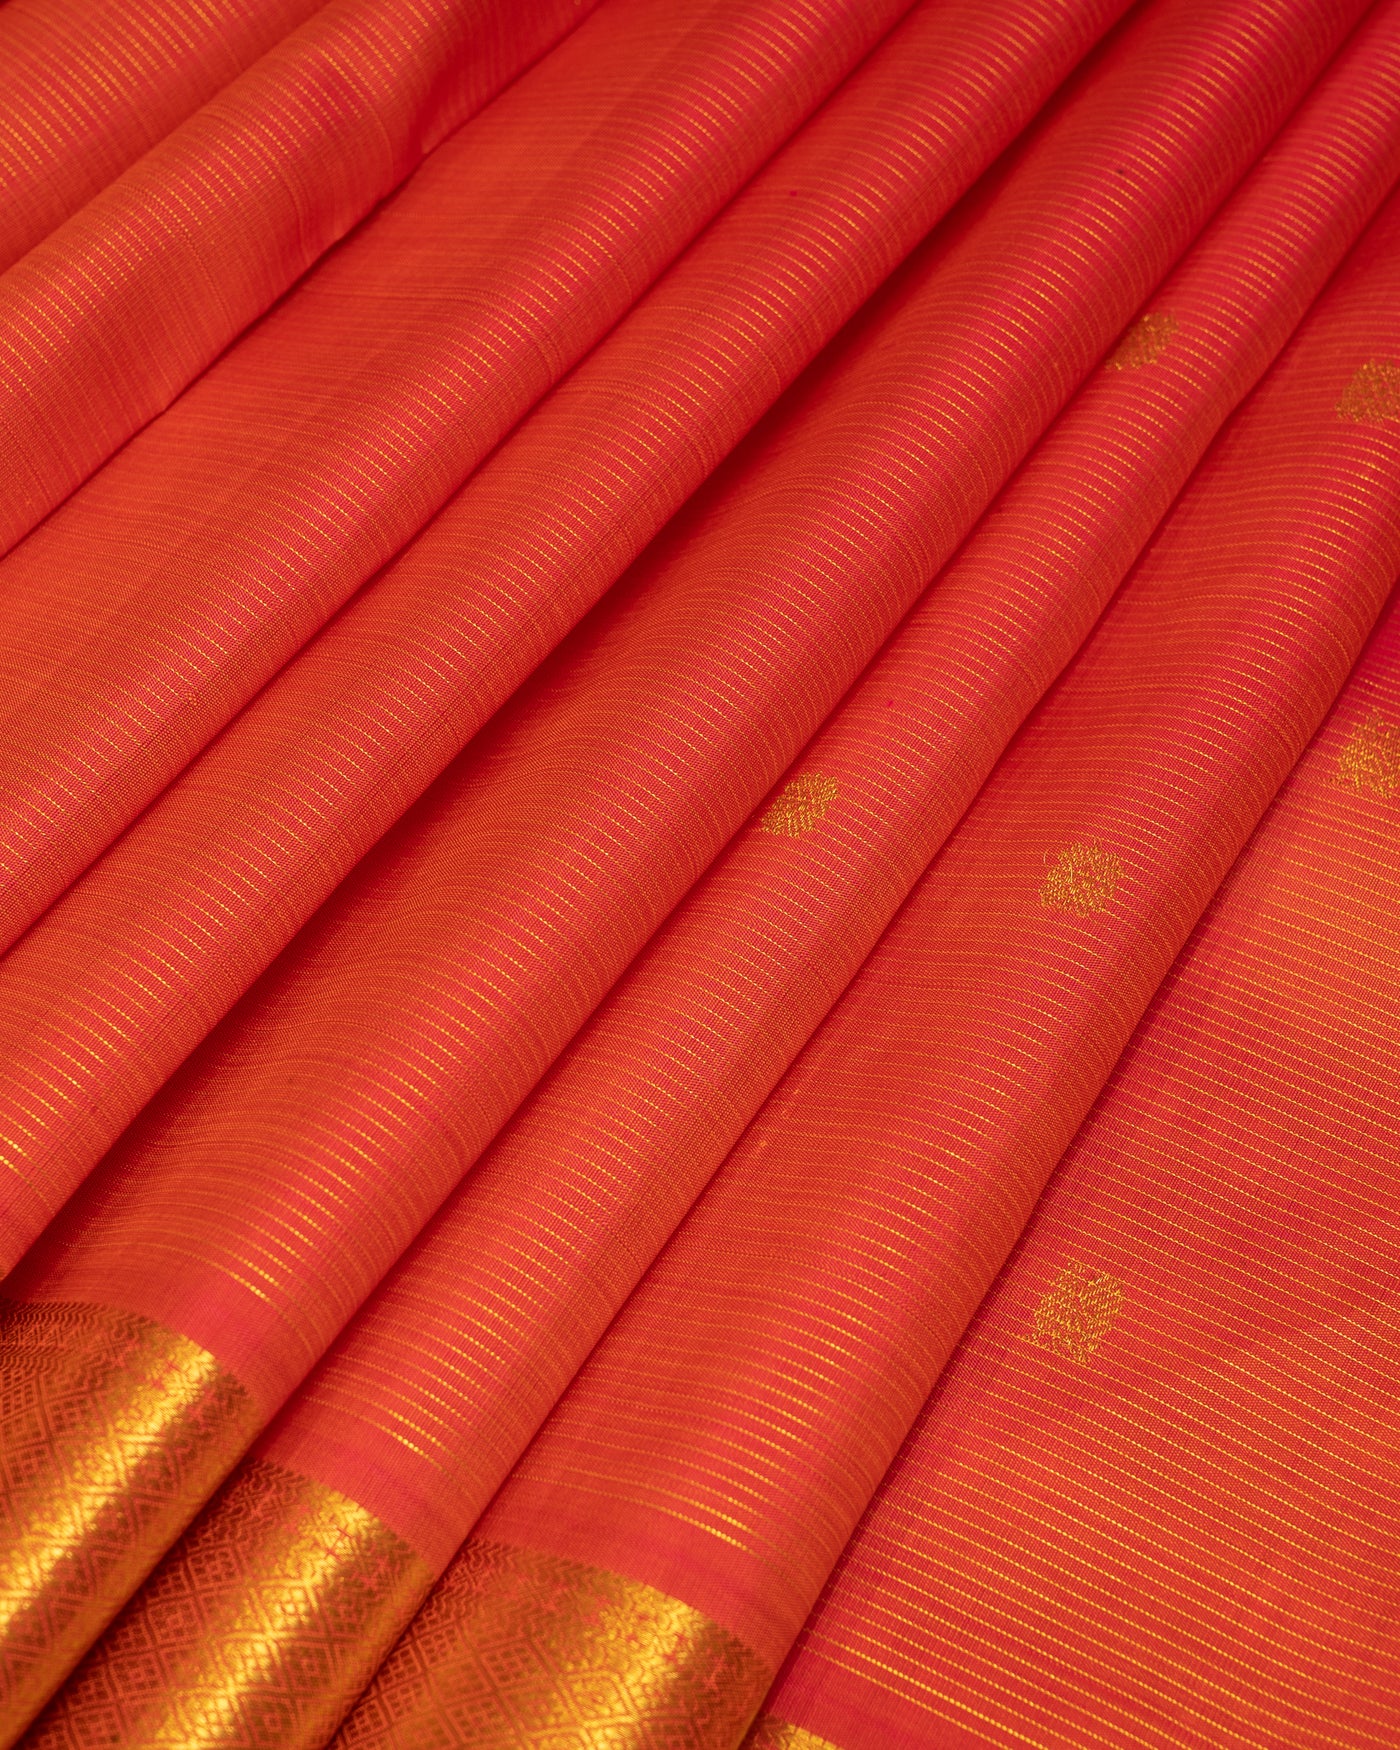 Peach Orange Vairaoosi pure kanjivaram Silk Sari - Clio Silks